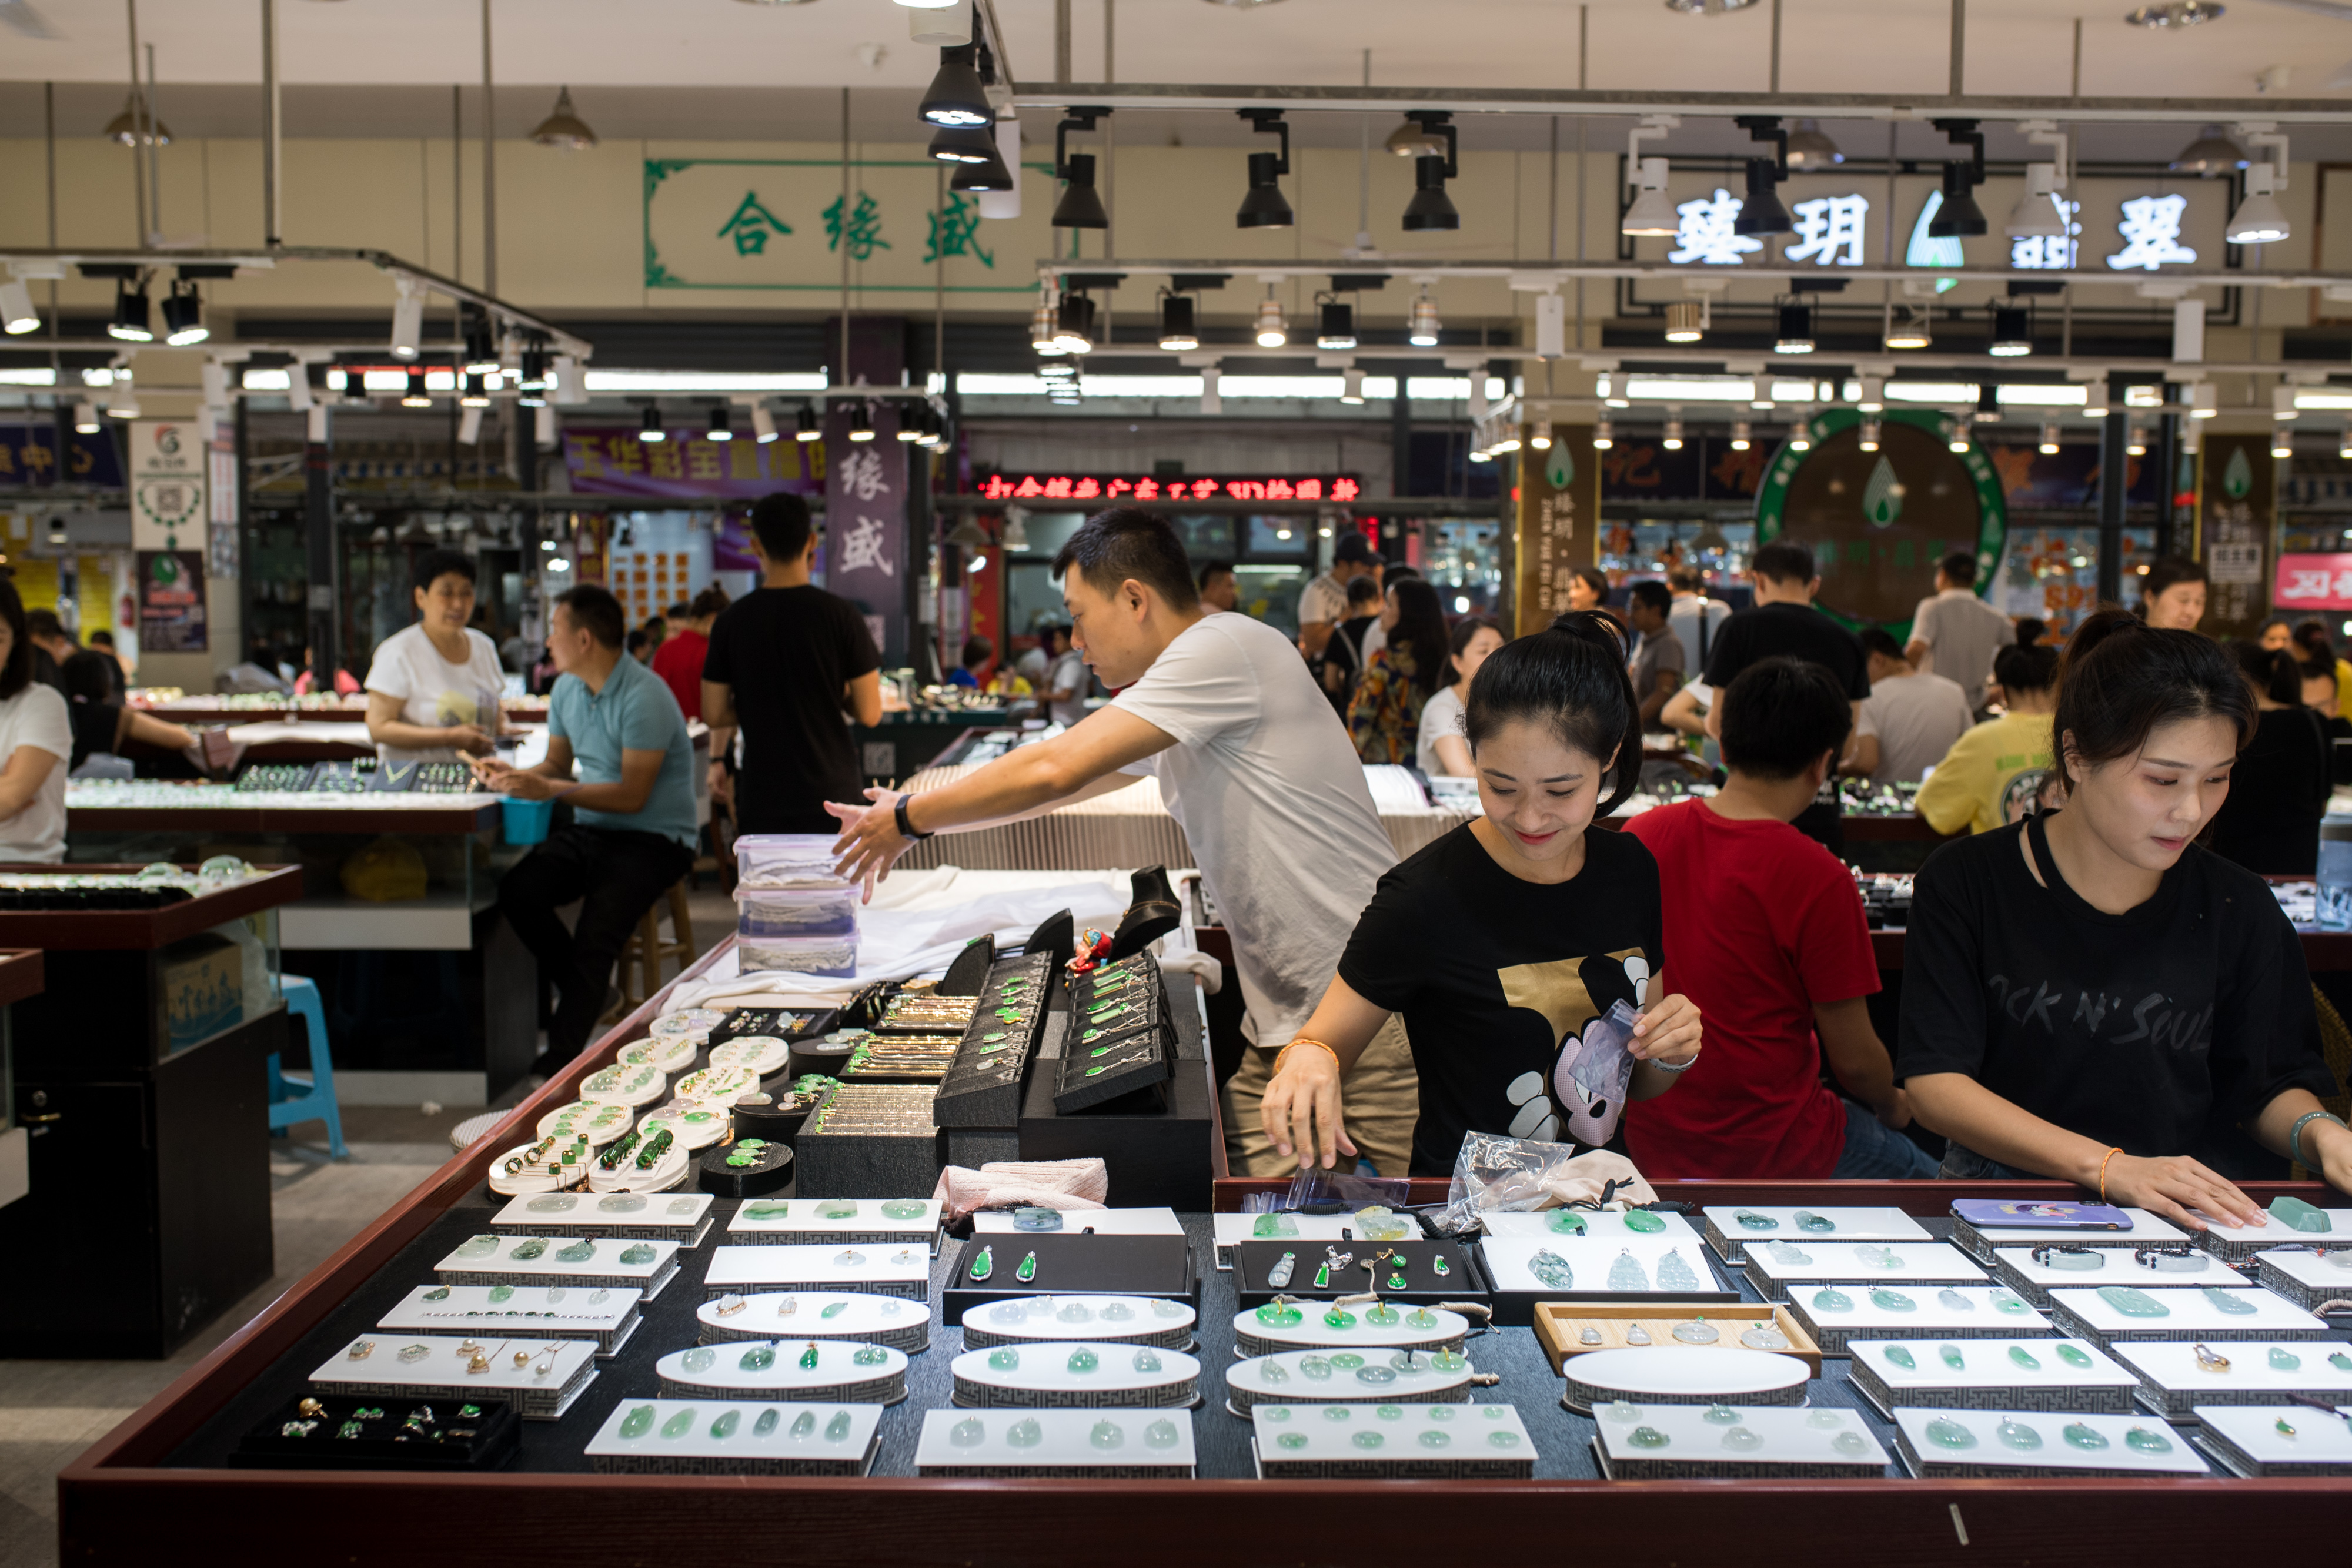 珠宝玉石产业蓬勃发展在云南瑞丽的珠宝玉石市场,工作人员在整理珠宝